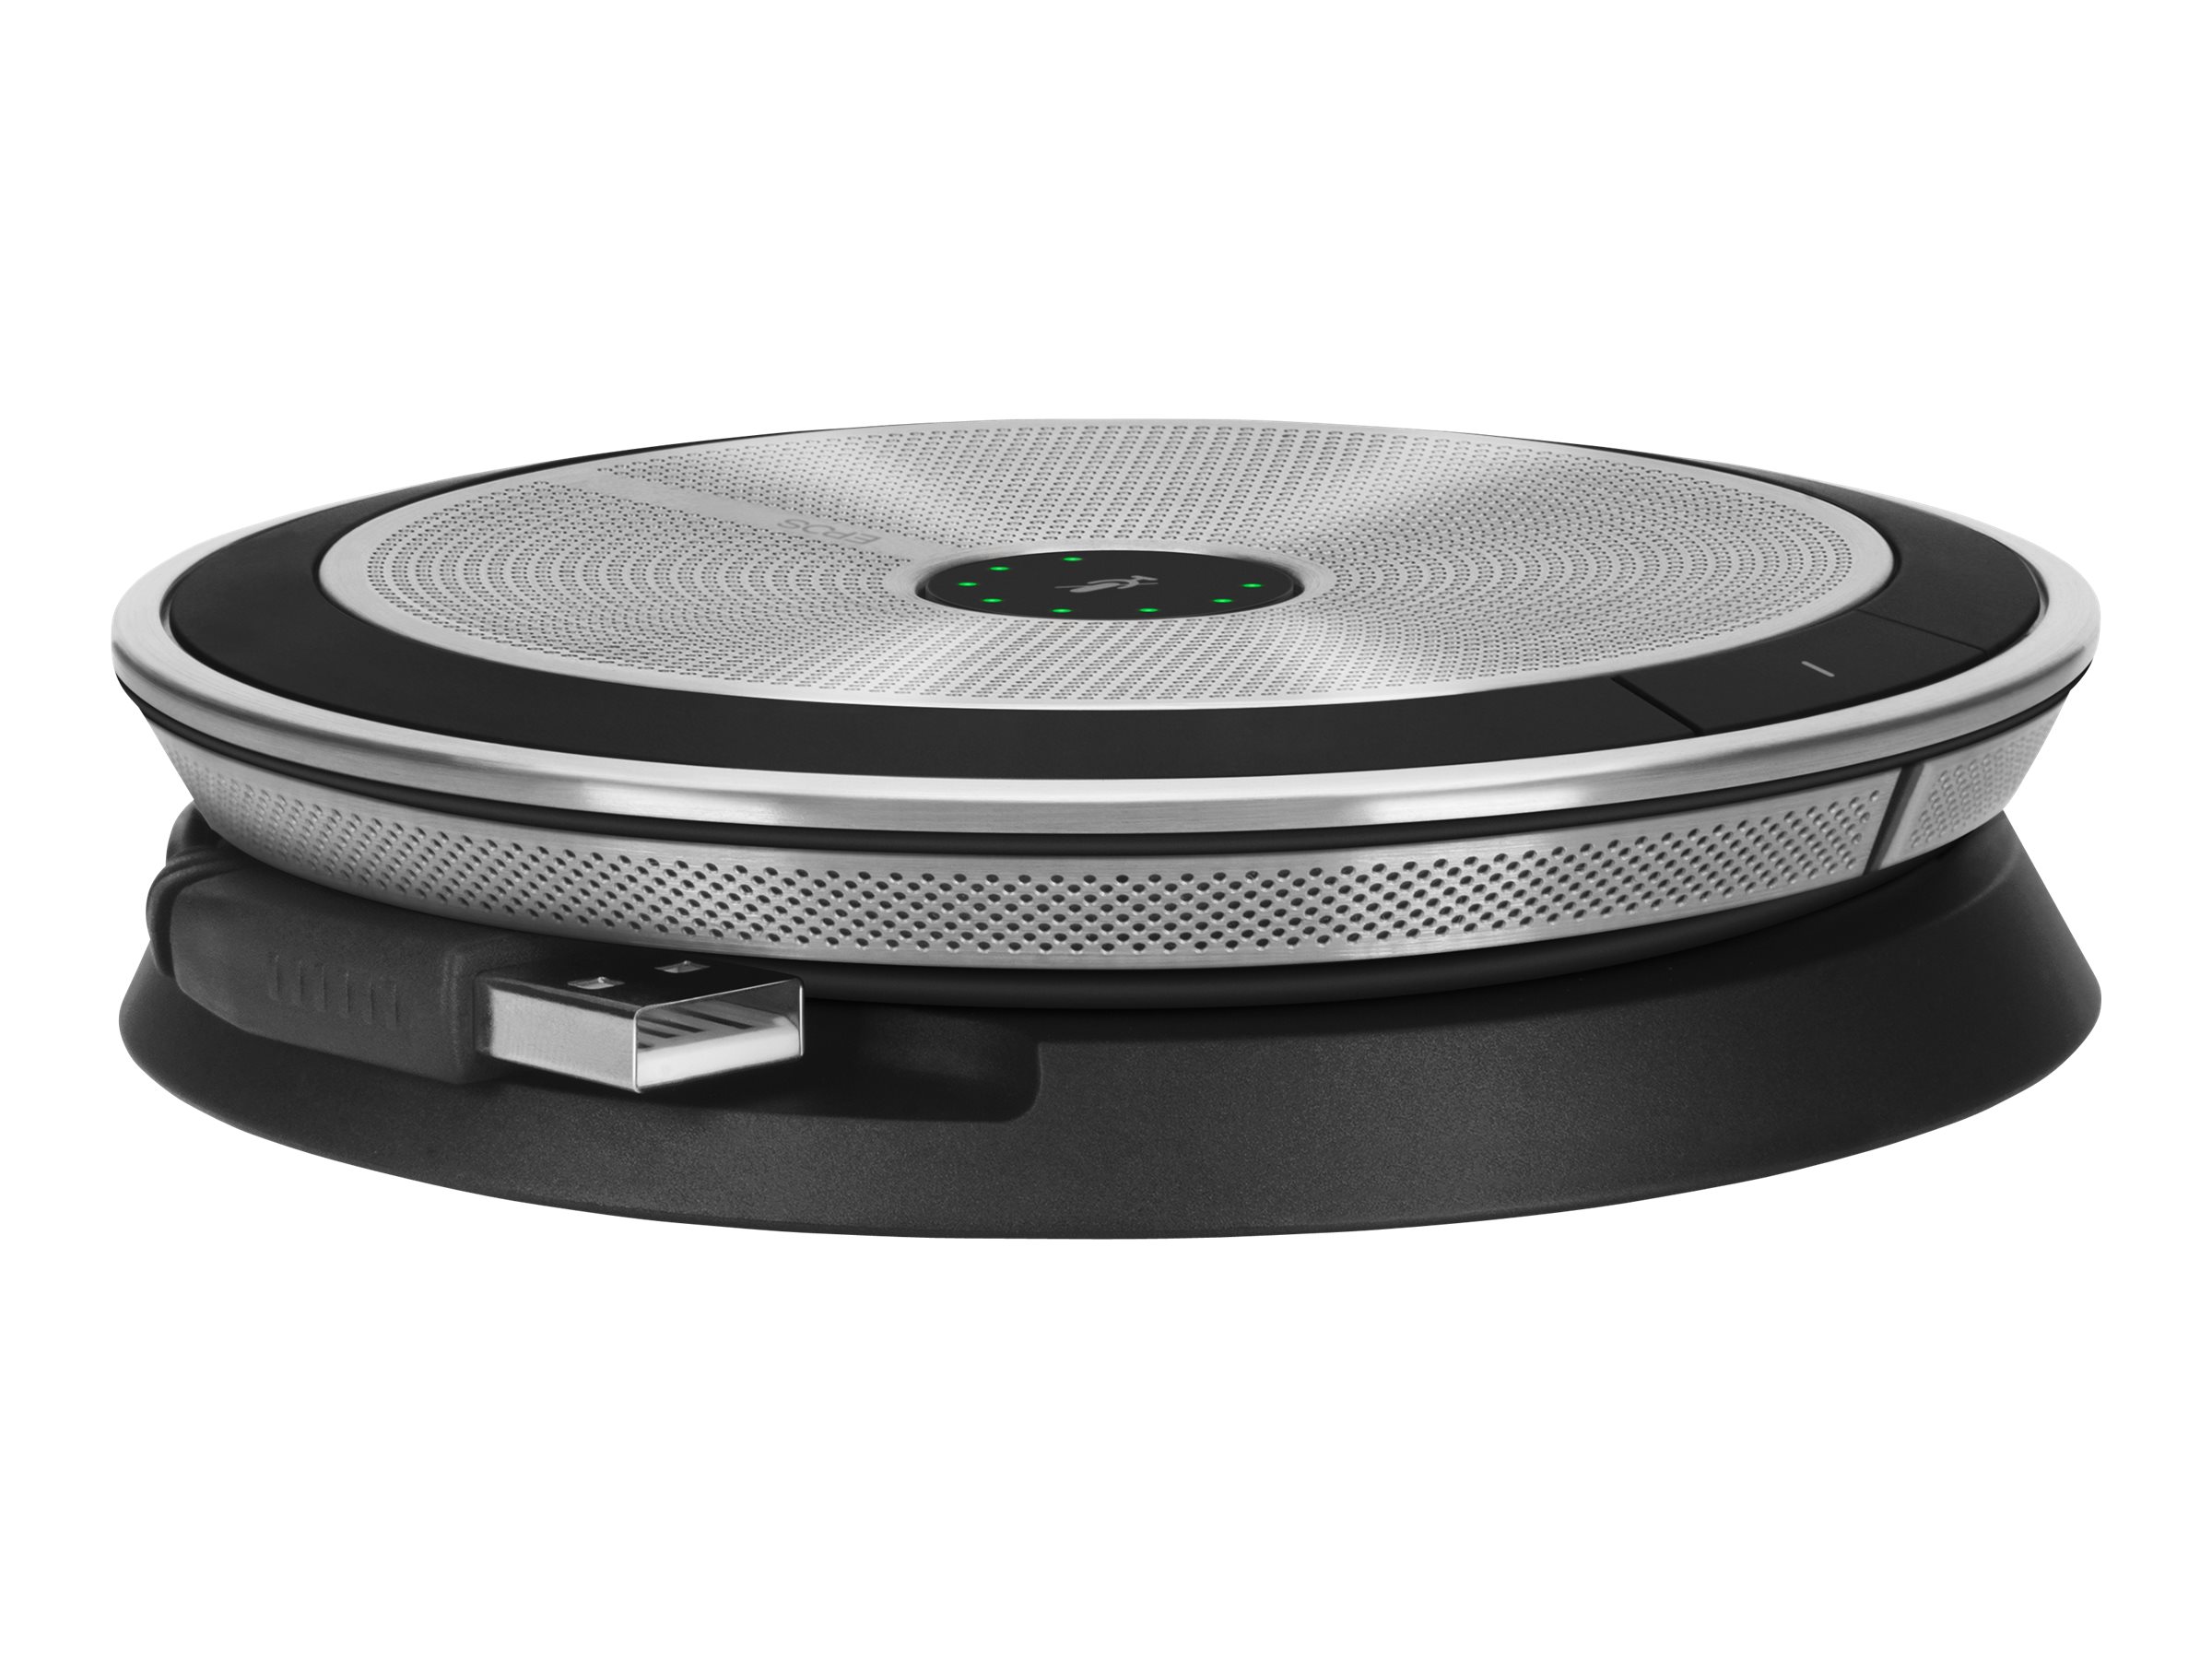 EPOS EXPAND SP 20 - Haut-parleur intelligent - filaire - USB, jack 3,5mm - noir, argent - Certifié pour Skype for Business - 1000226 - Speakerphones